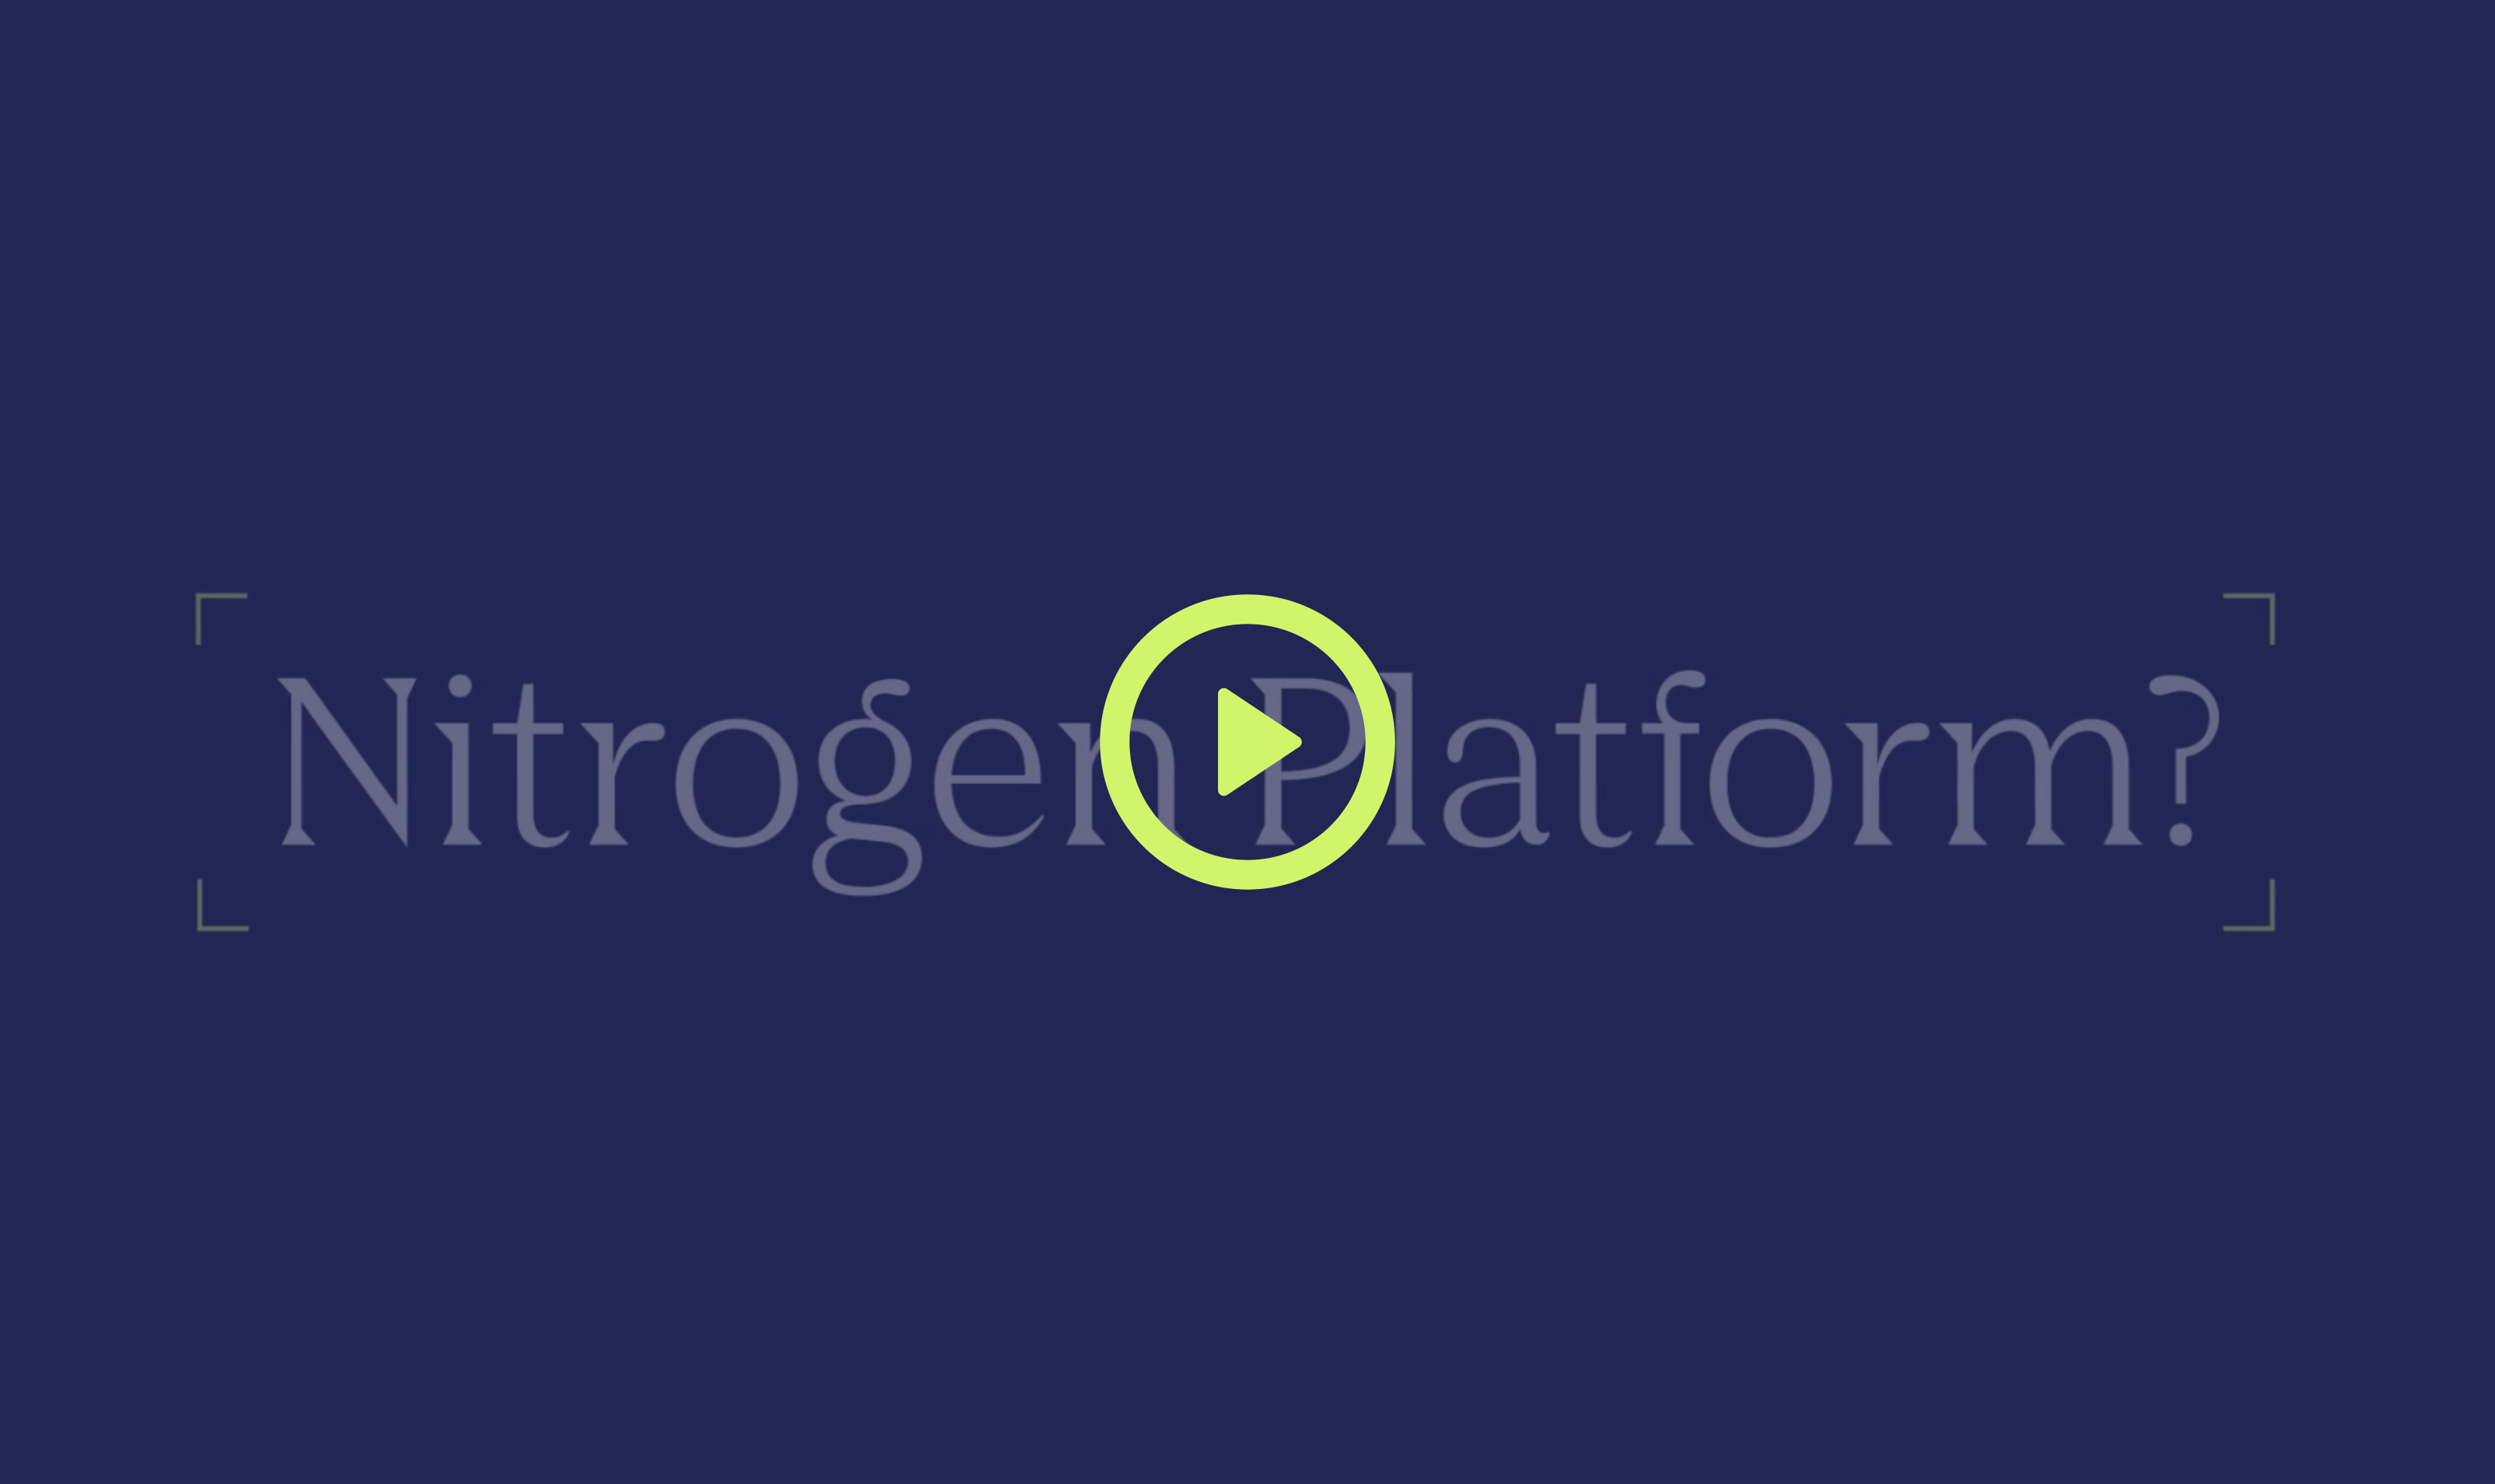 Nitrogen Platform Video Still